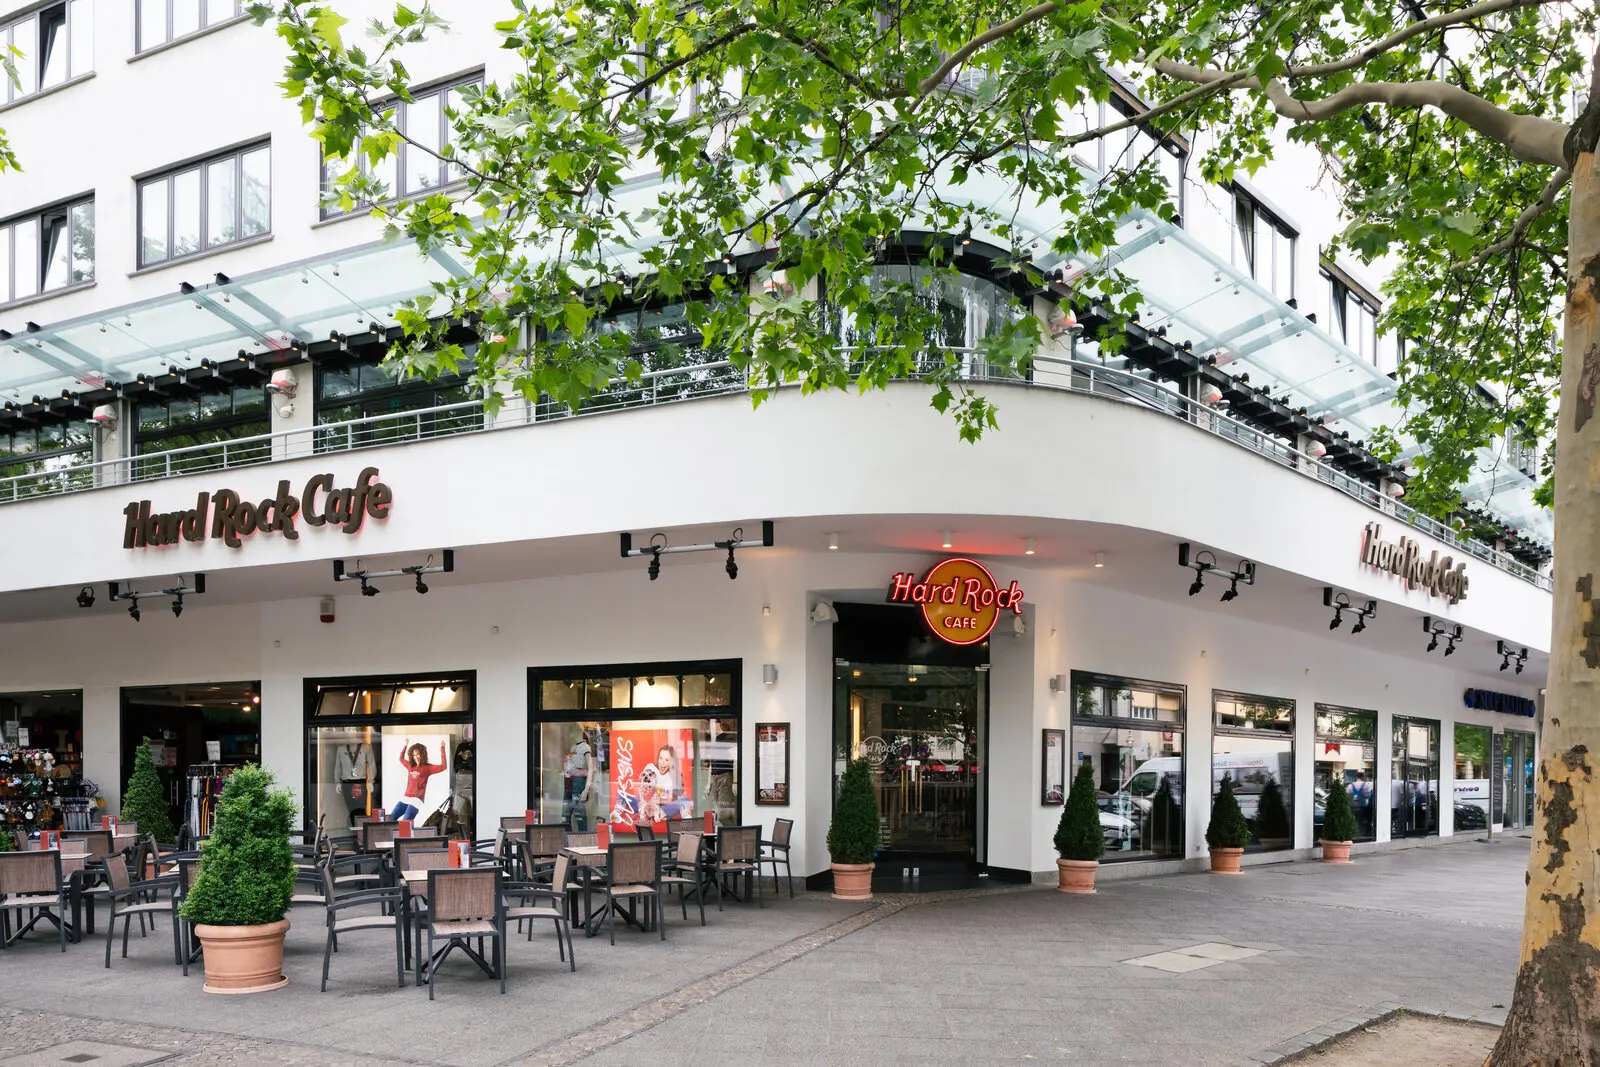 hard rock cafe deutschland - Welches ist das größte Hard Rock Cafe